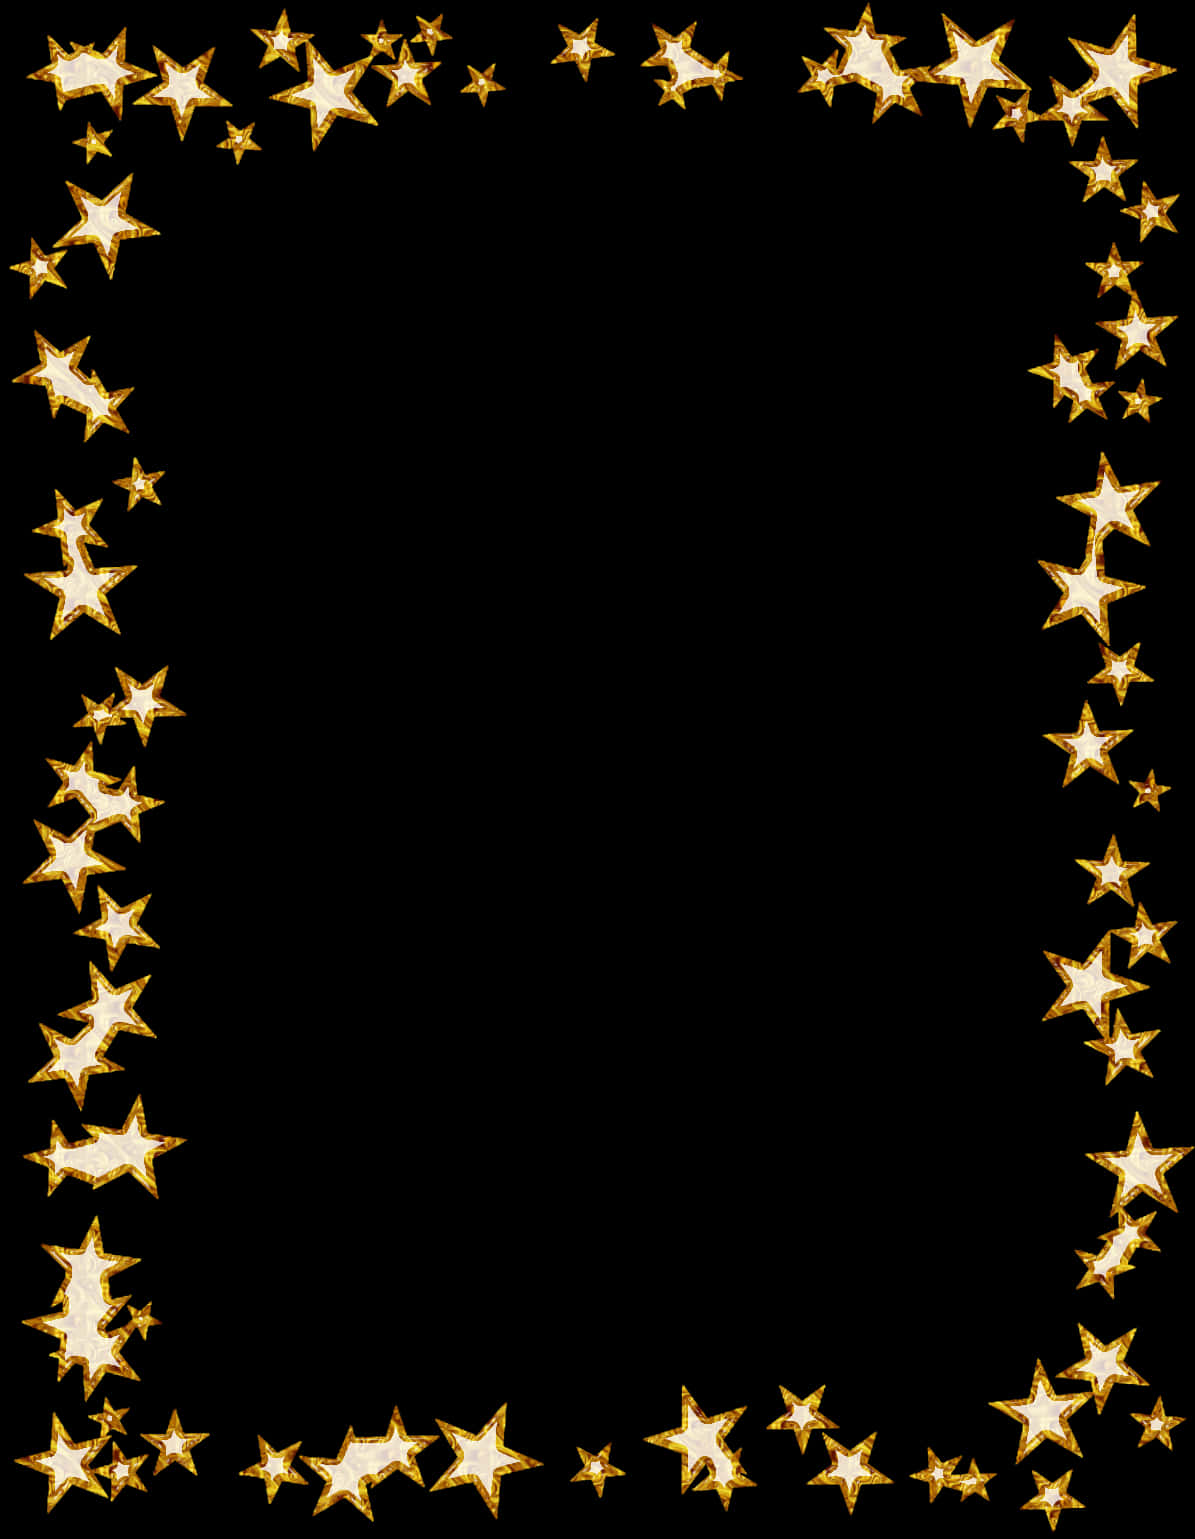 Golden Star Frame Design PNG image